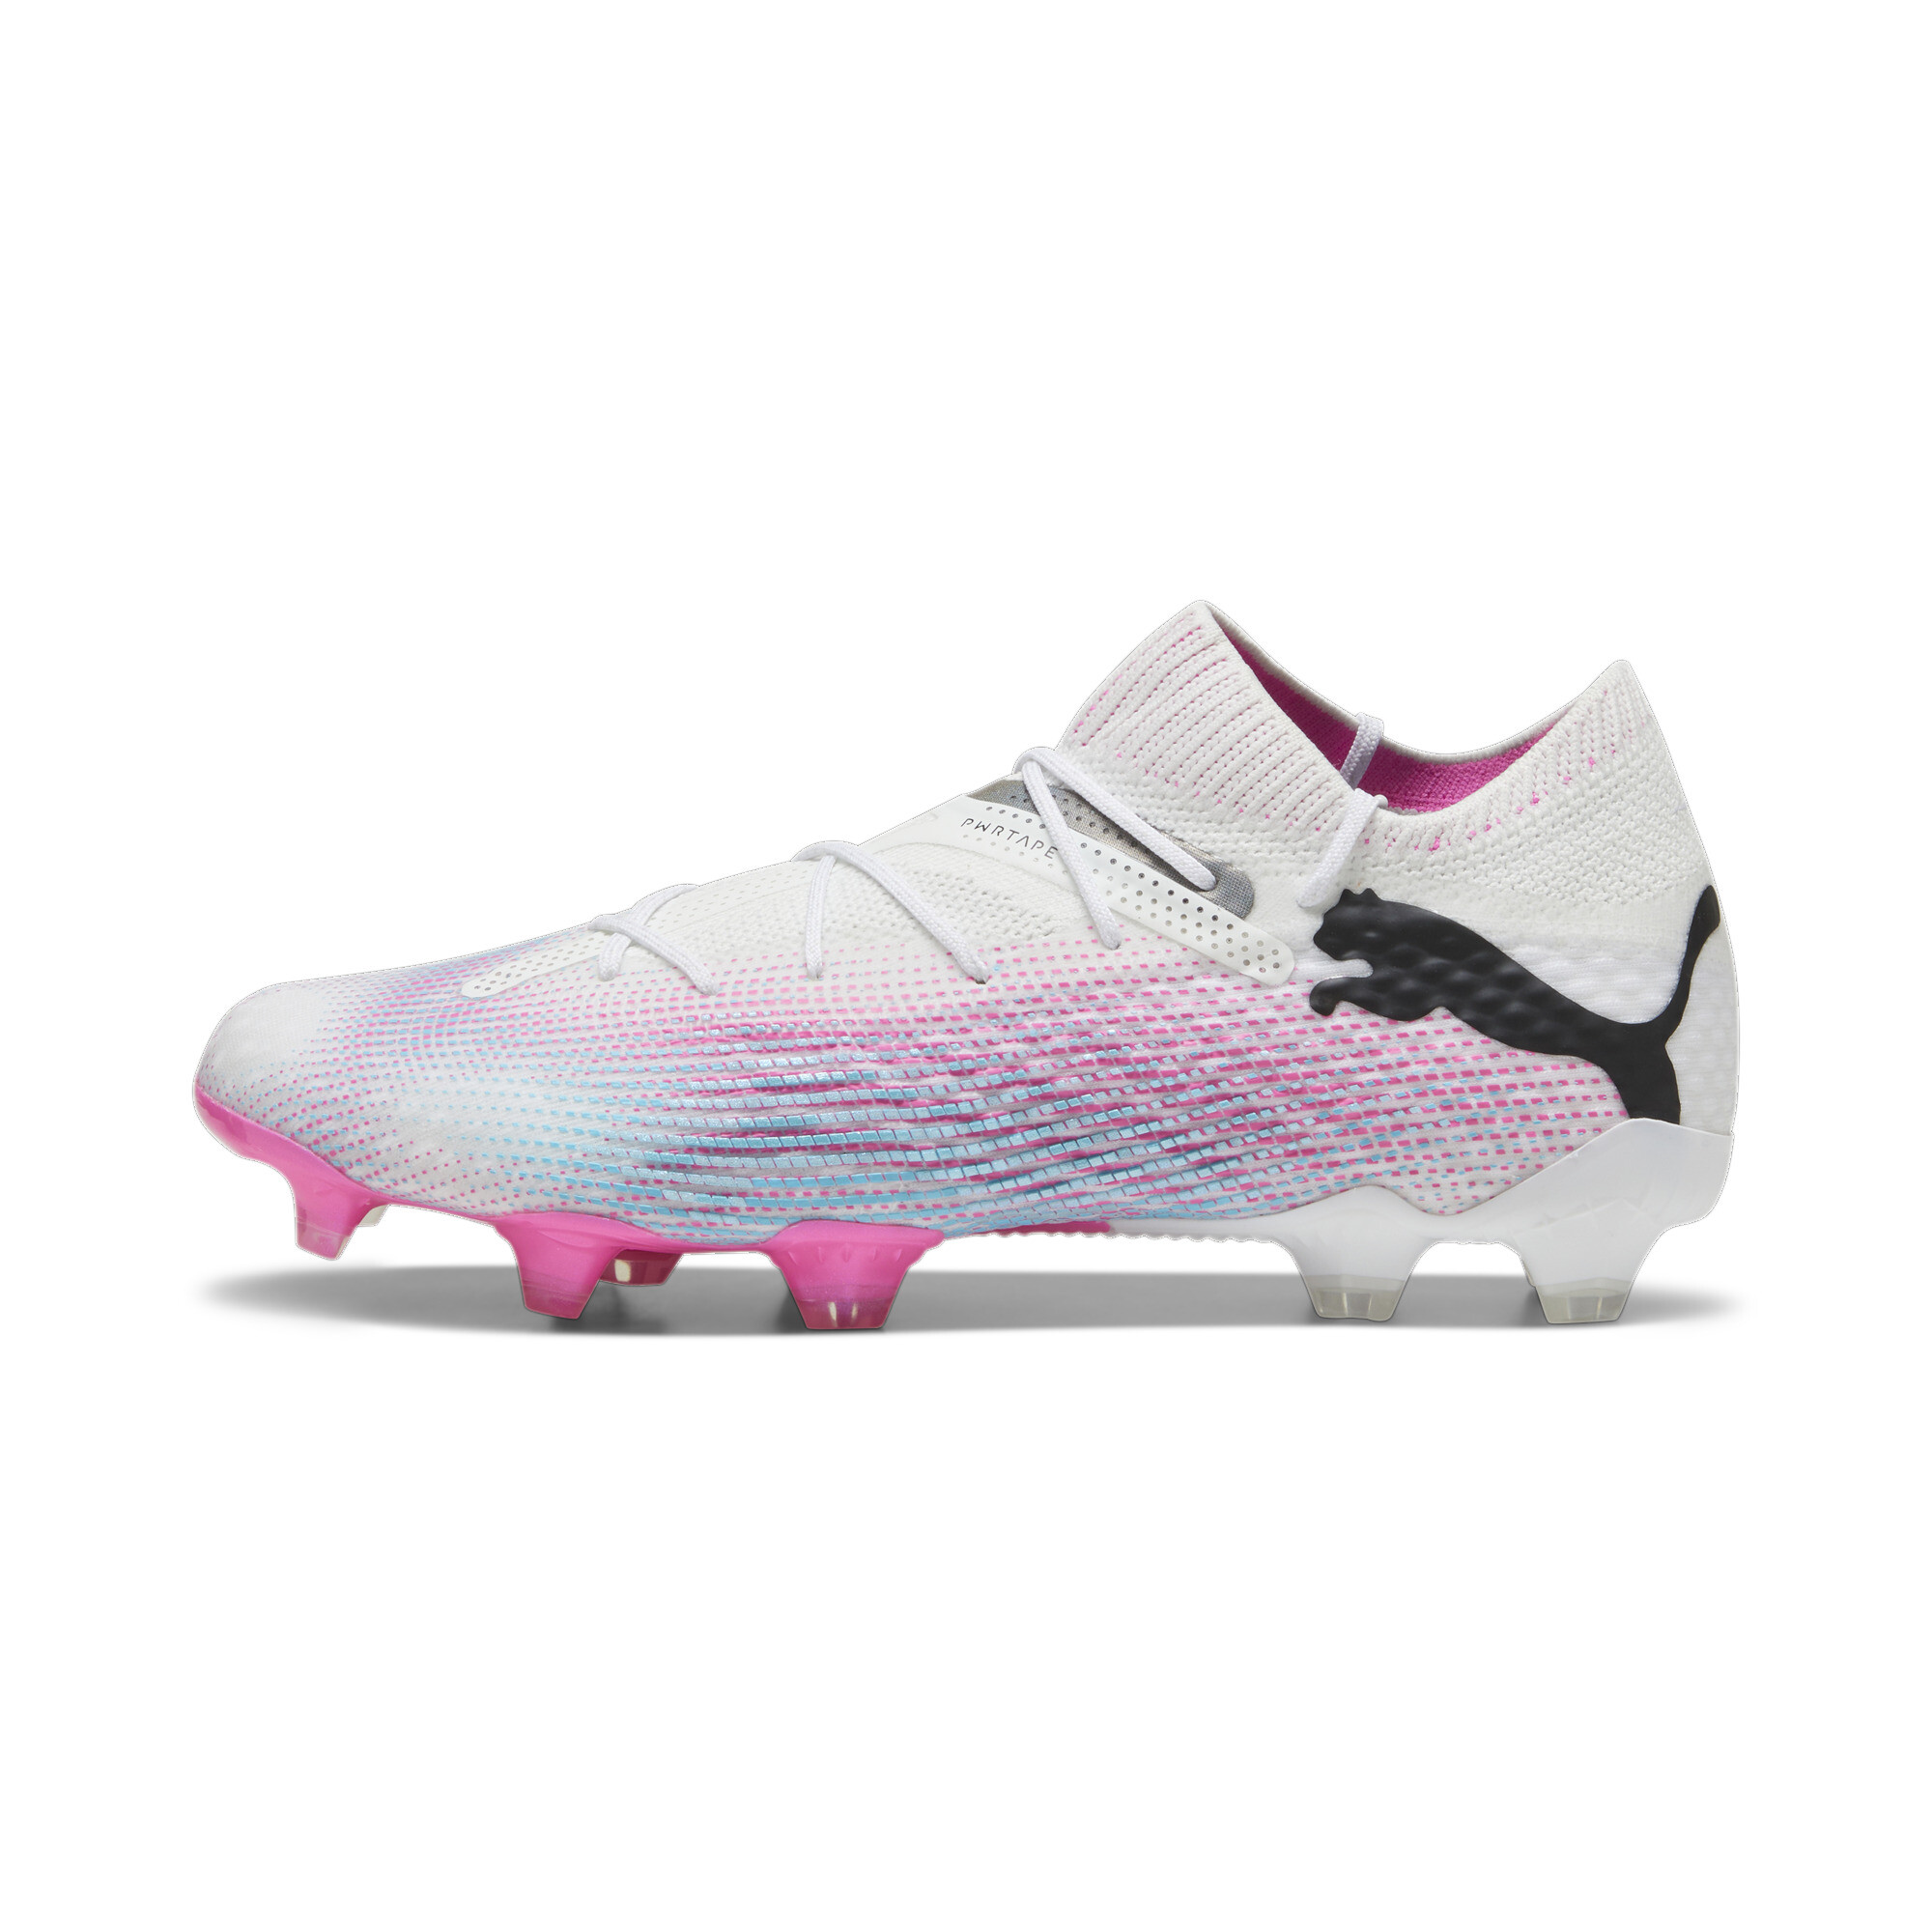 PUMA - Botas de fútbol blancas y rosas Ultra Play MG Hombre